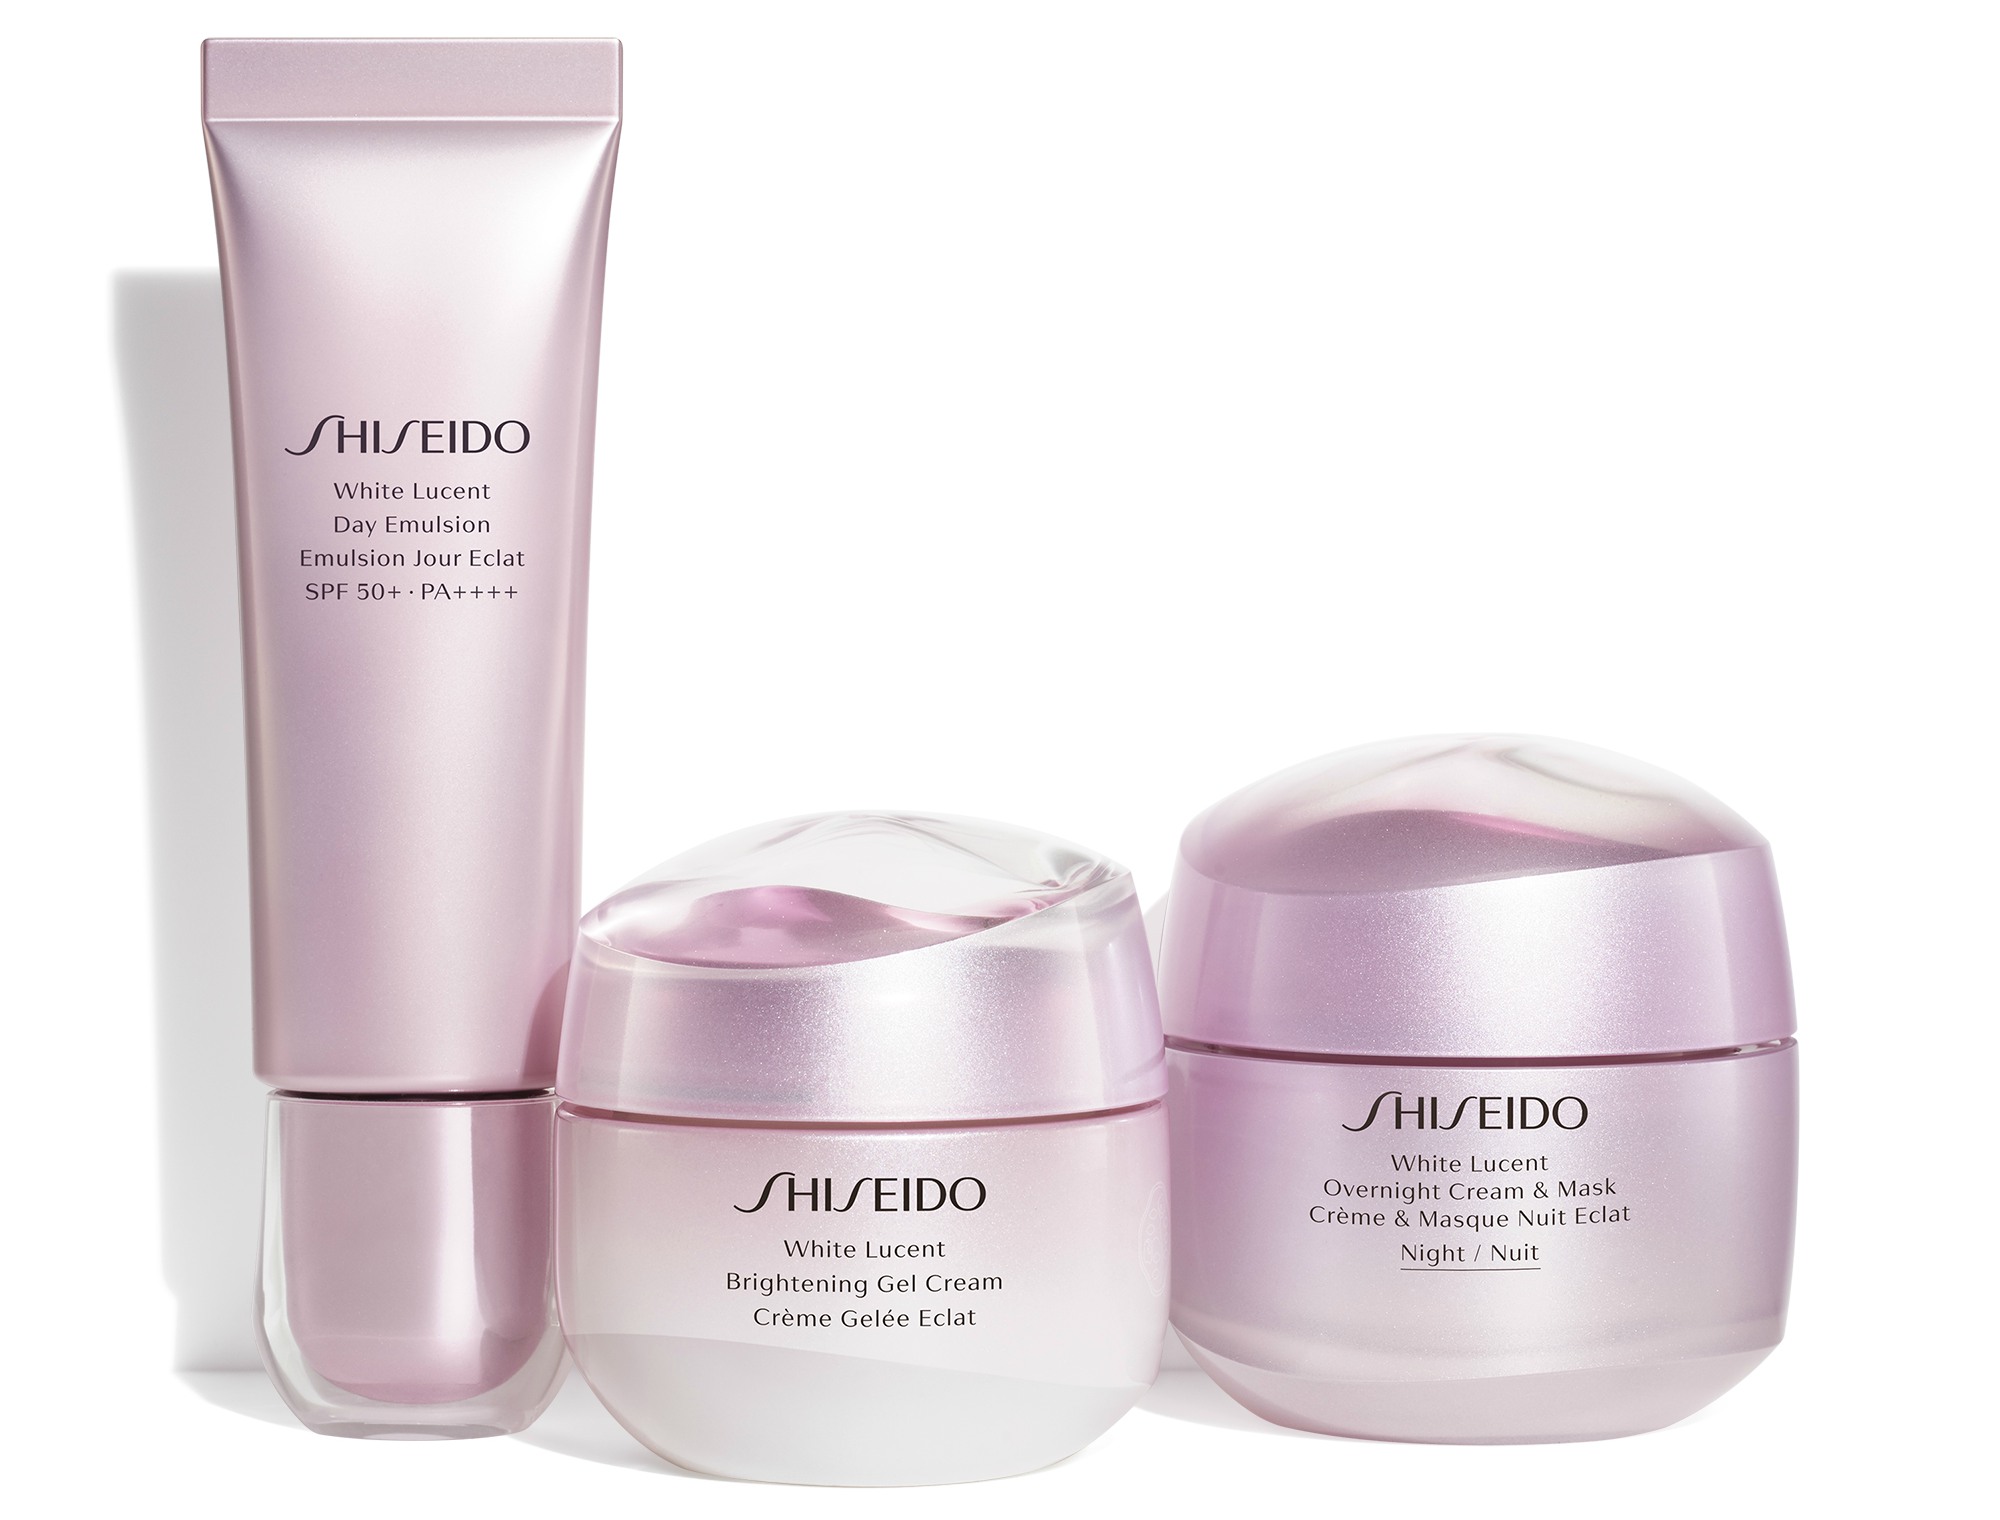 Kết hợp với sử dụng sản phẩm kem dưỡng cao cấp từ Shiseido